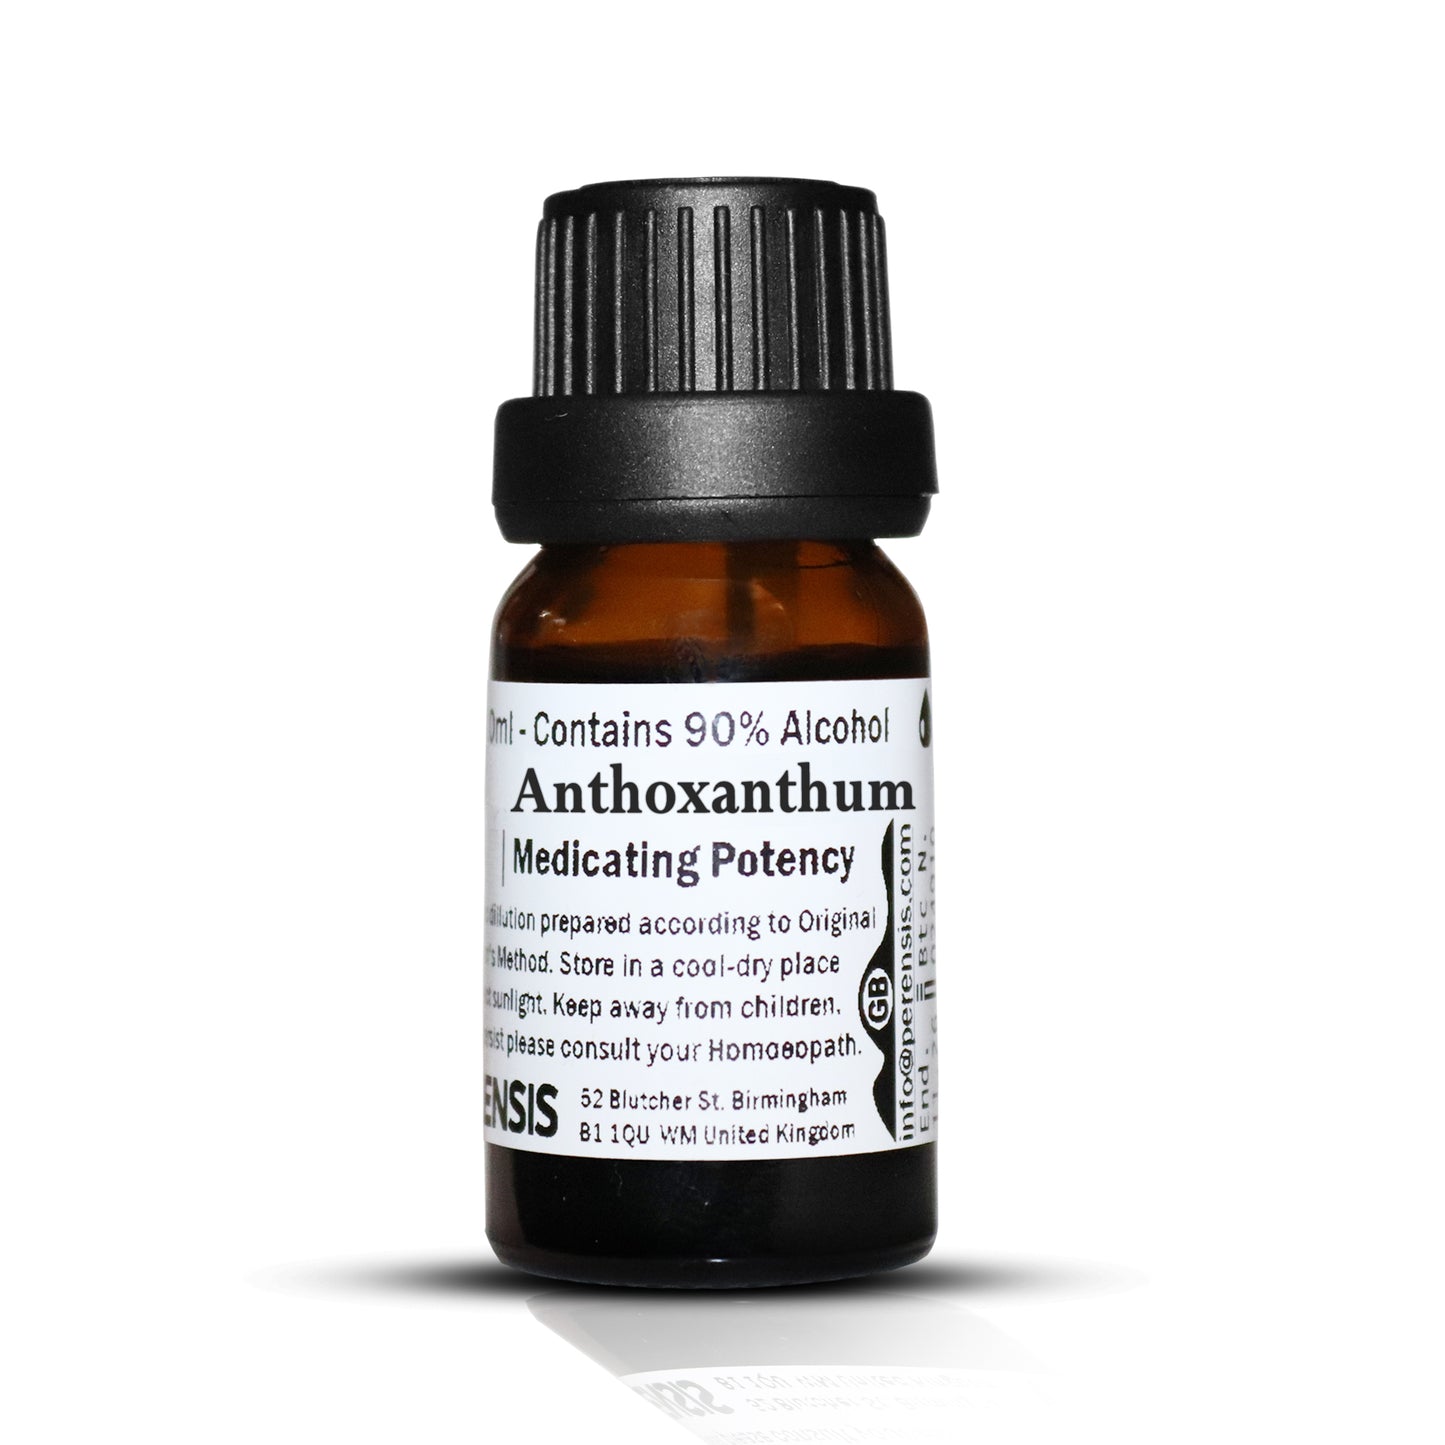 Anthoxanthum